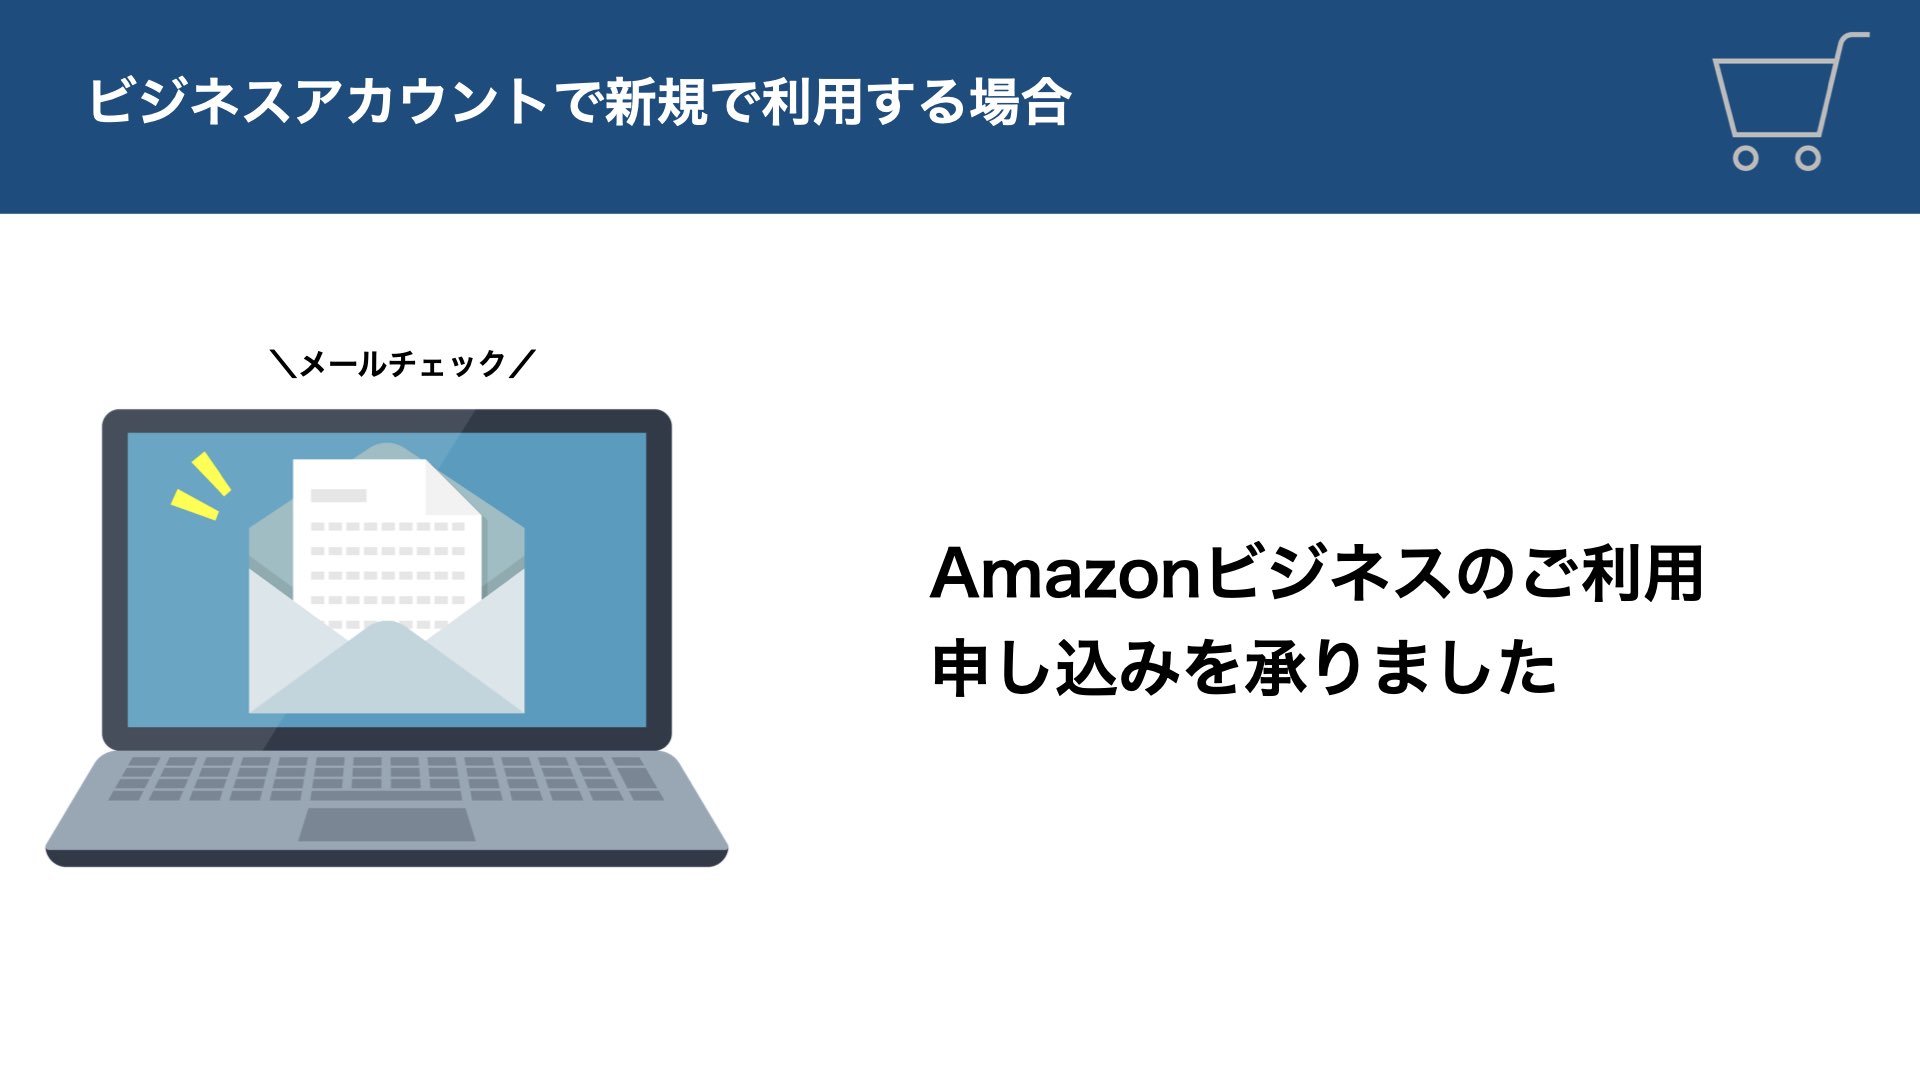 AmazonからAmazonビジネスのご利用申し込みを承りましたとのメールが届きます。